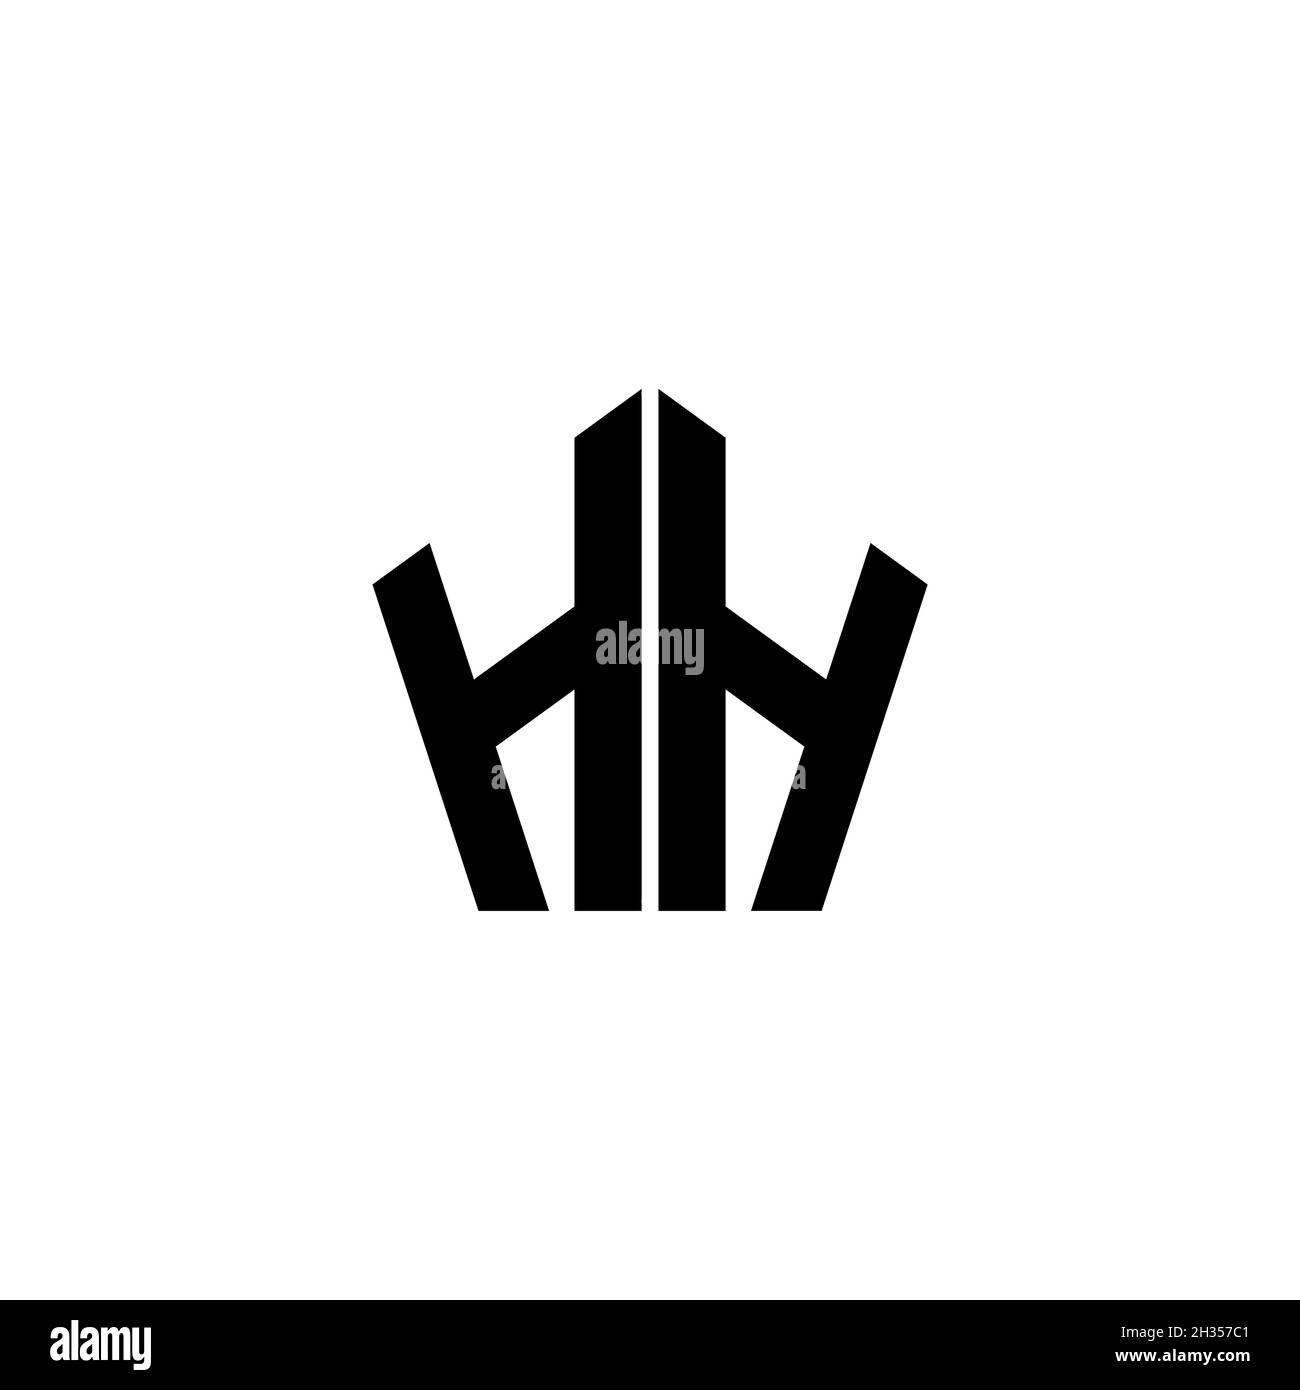 Lettera del logo del monogramma HH con disegno di forma geometrica poligonale isolato su sfondo bianco. Stella poligonale, stella di scudo geometrico. Illustrazione Vettoriale